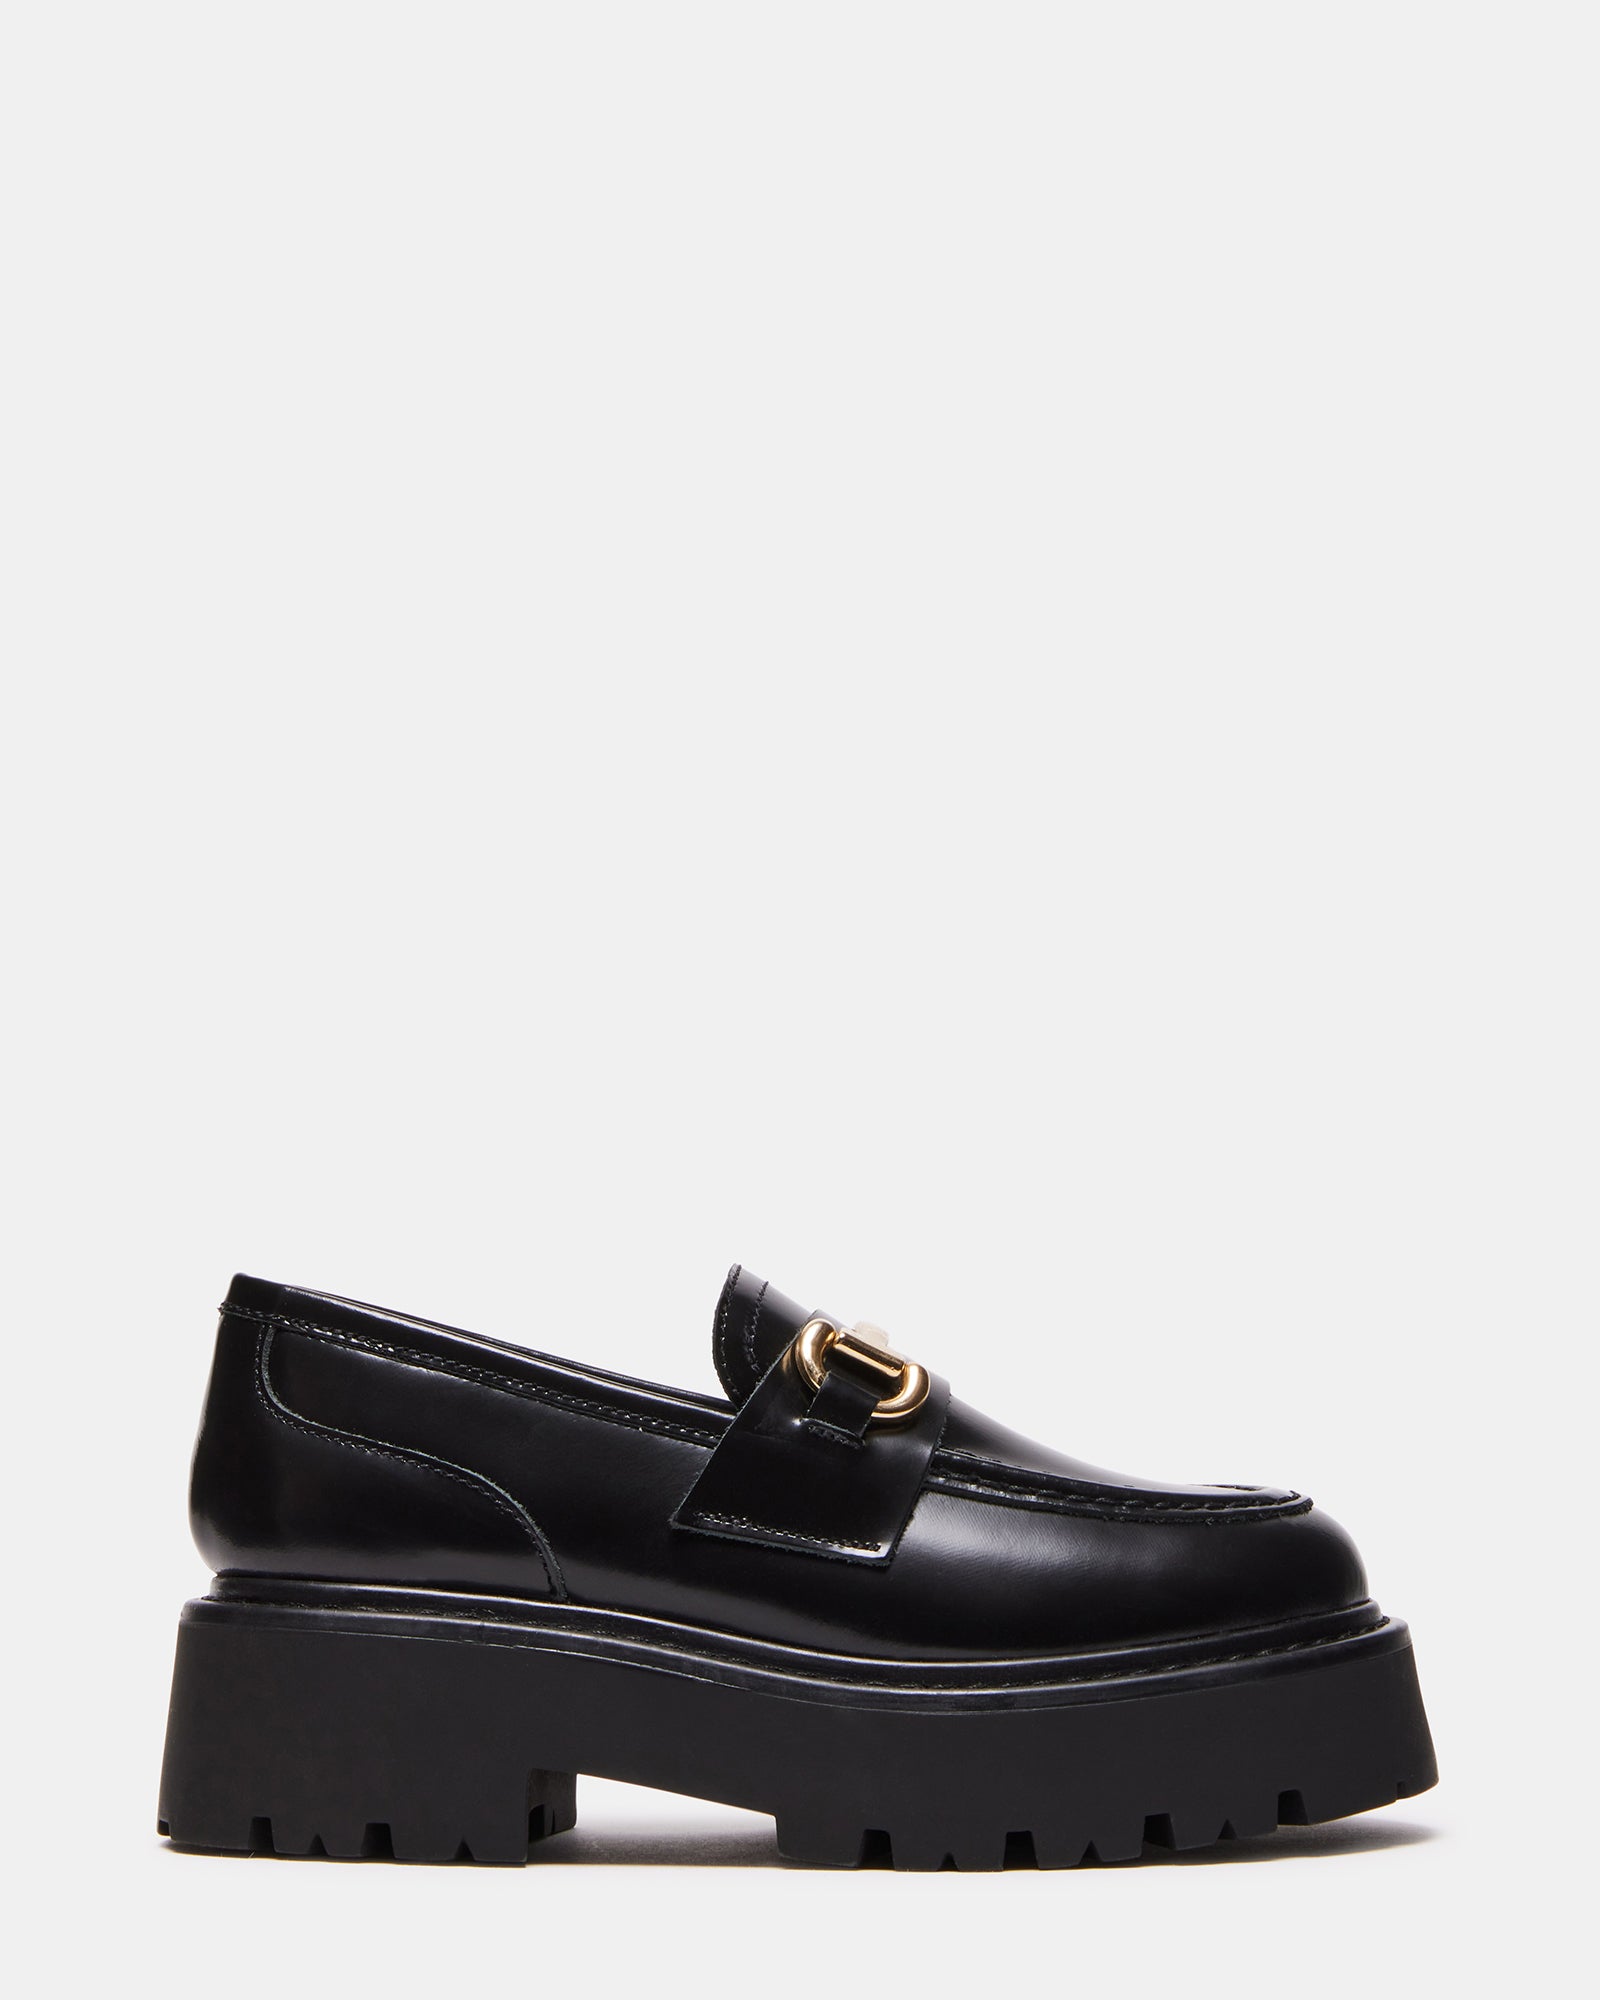 LAWRENCE Black Leather Slip-On Loafer